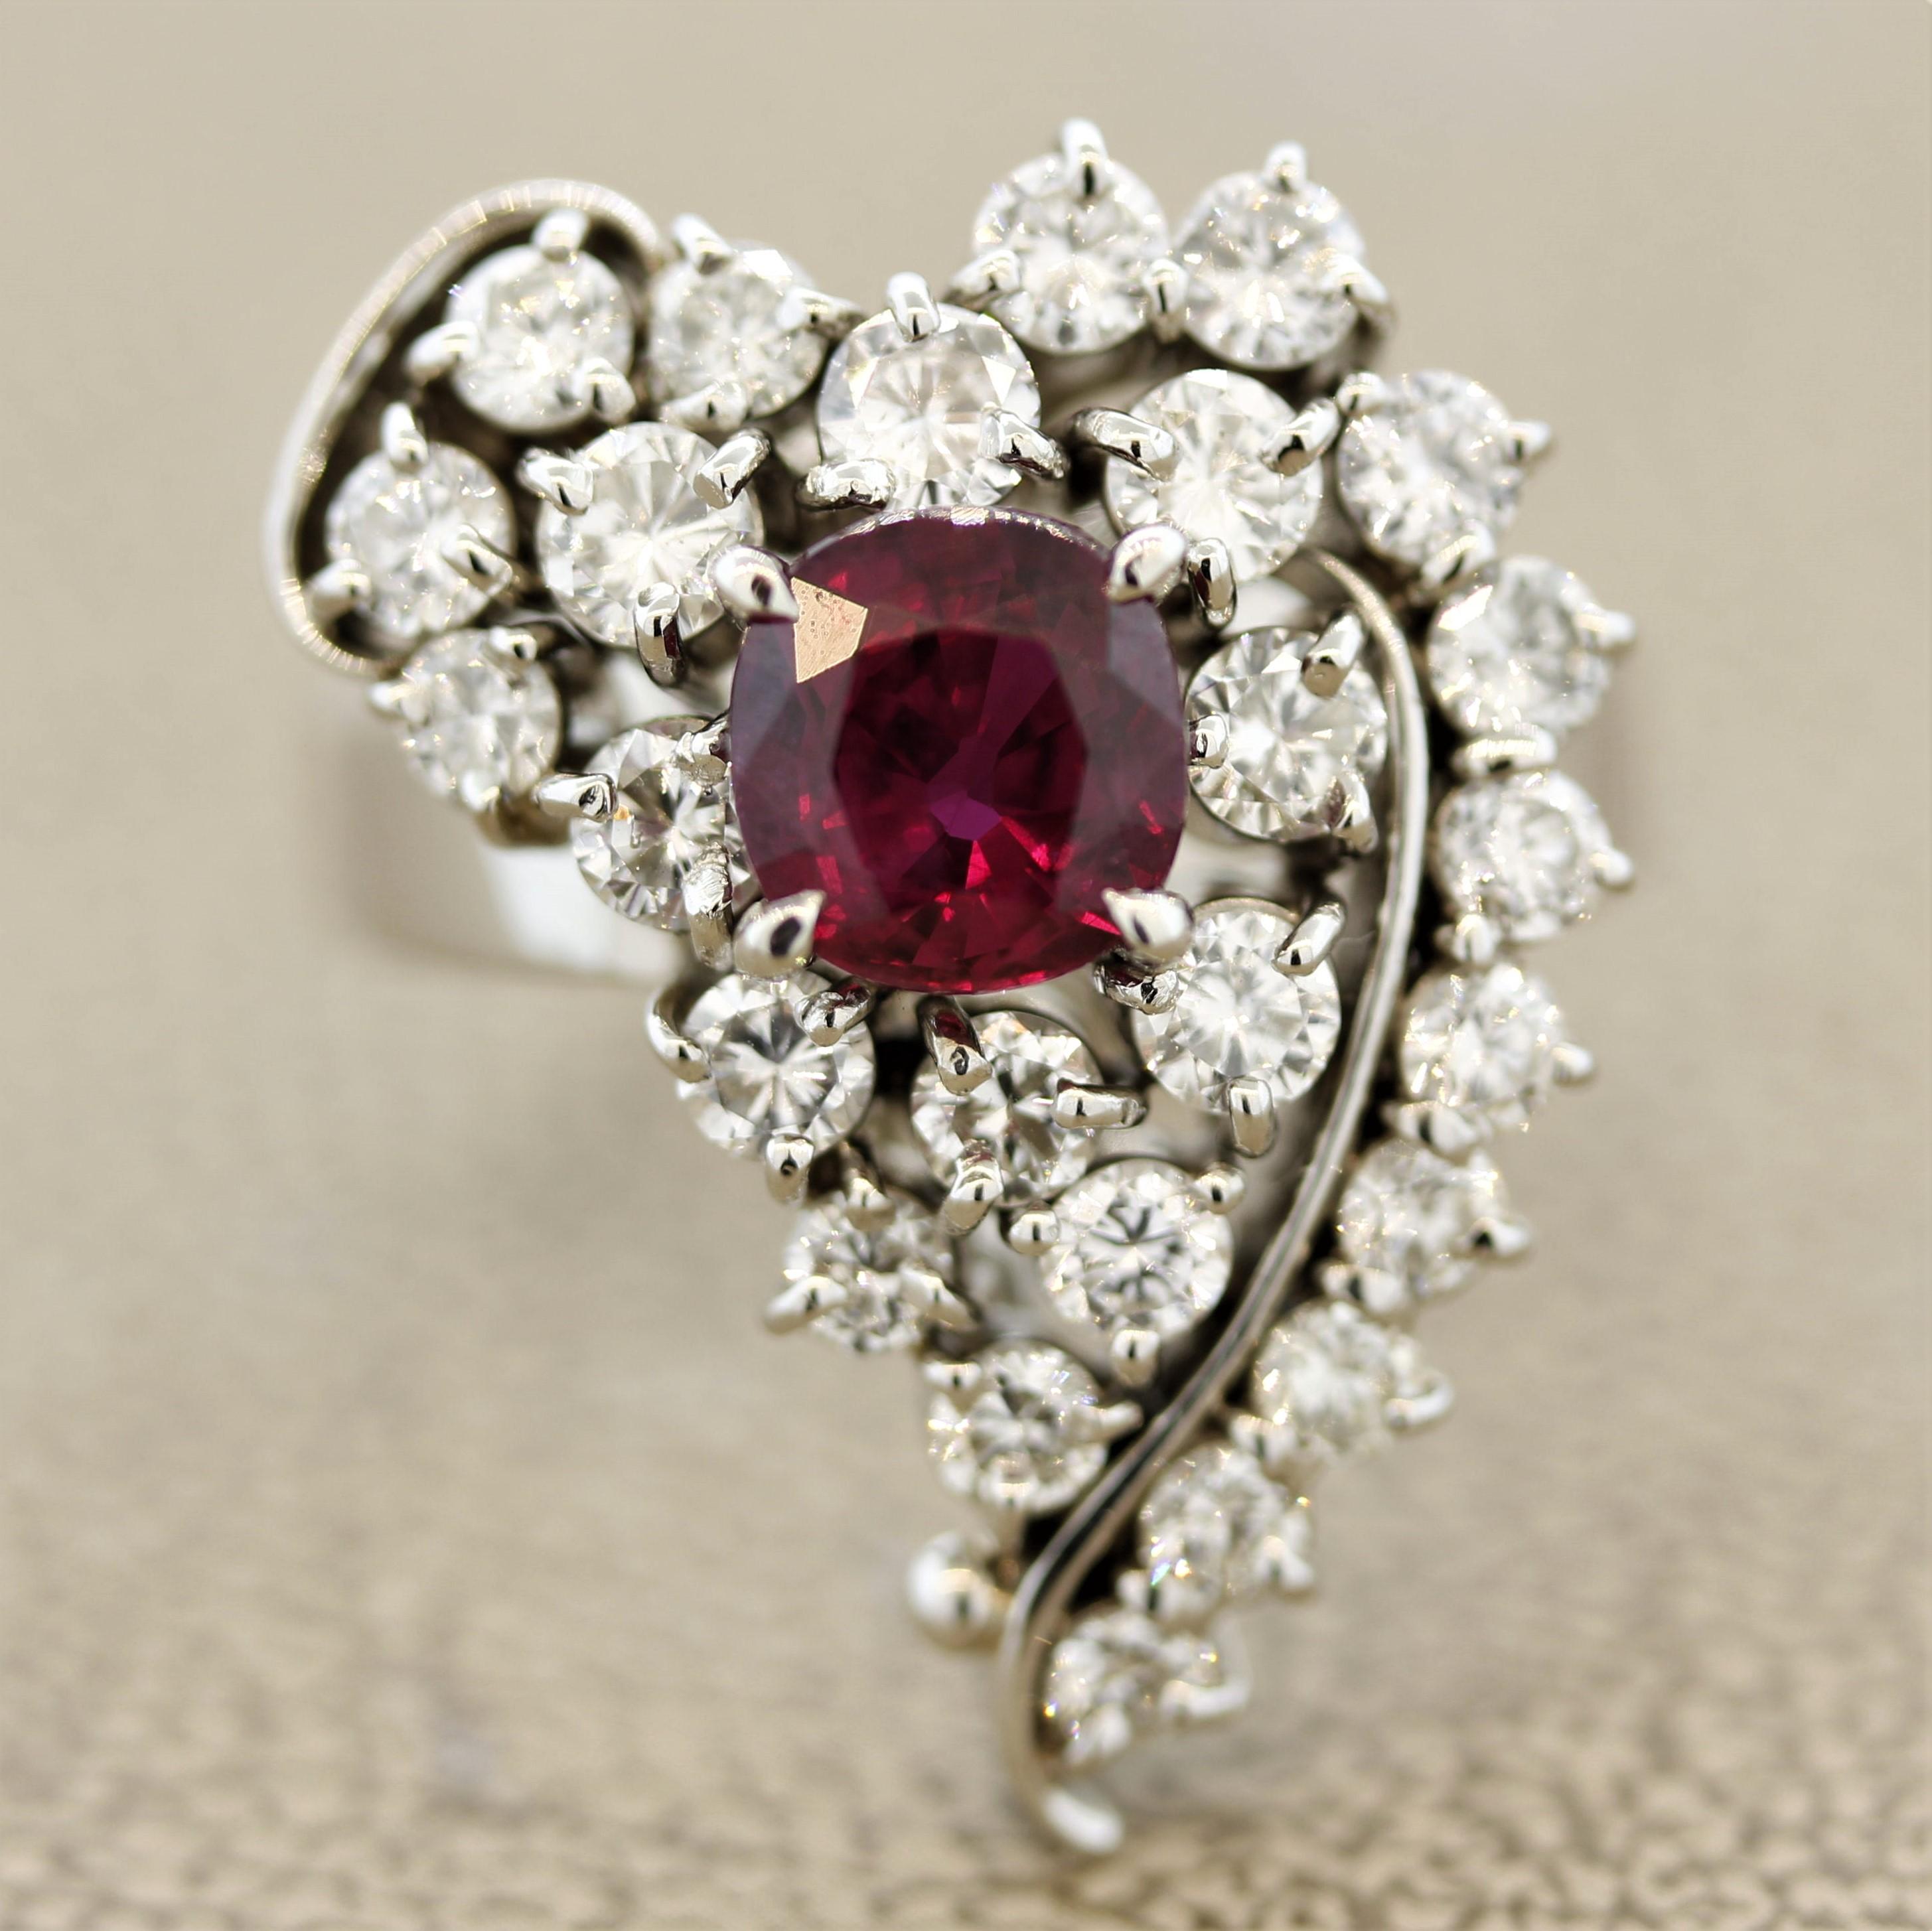 Ein stilvoller Ring in Form eines Herzens mit hochwertigen Edelsteinen. Der kissenförmige Rubin wiegt 1,66 Karat und hat eine reine, lebhafte rote Farbe. Ein wahres Juwel von einem Rubin. Er wird von 1,73 Karat runden Diamanten im Brillantschliff